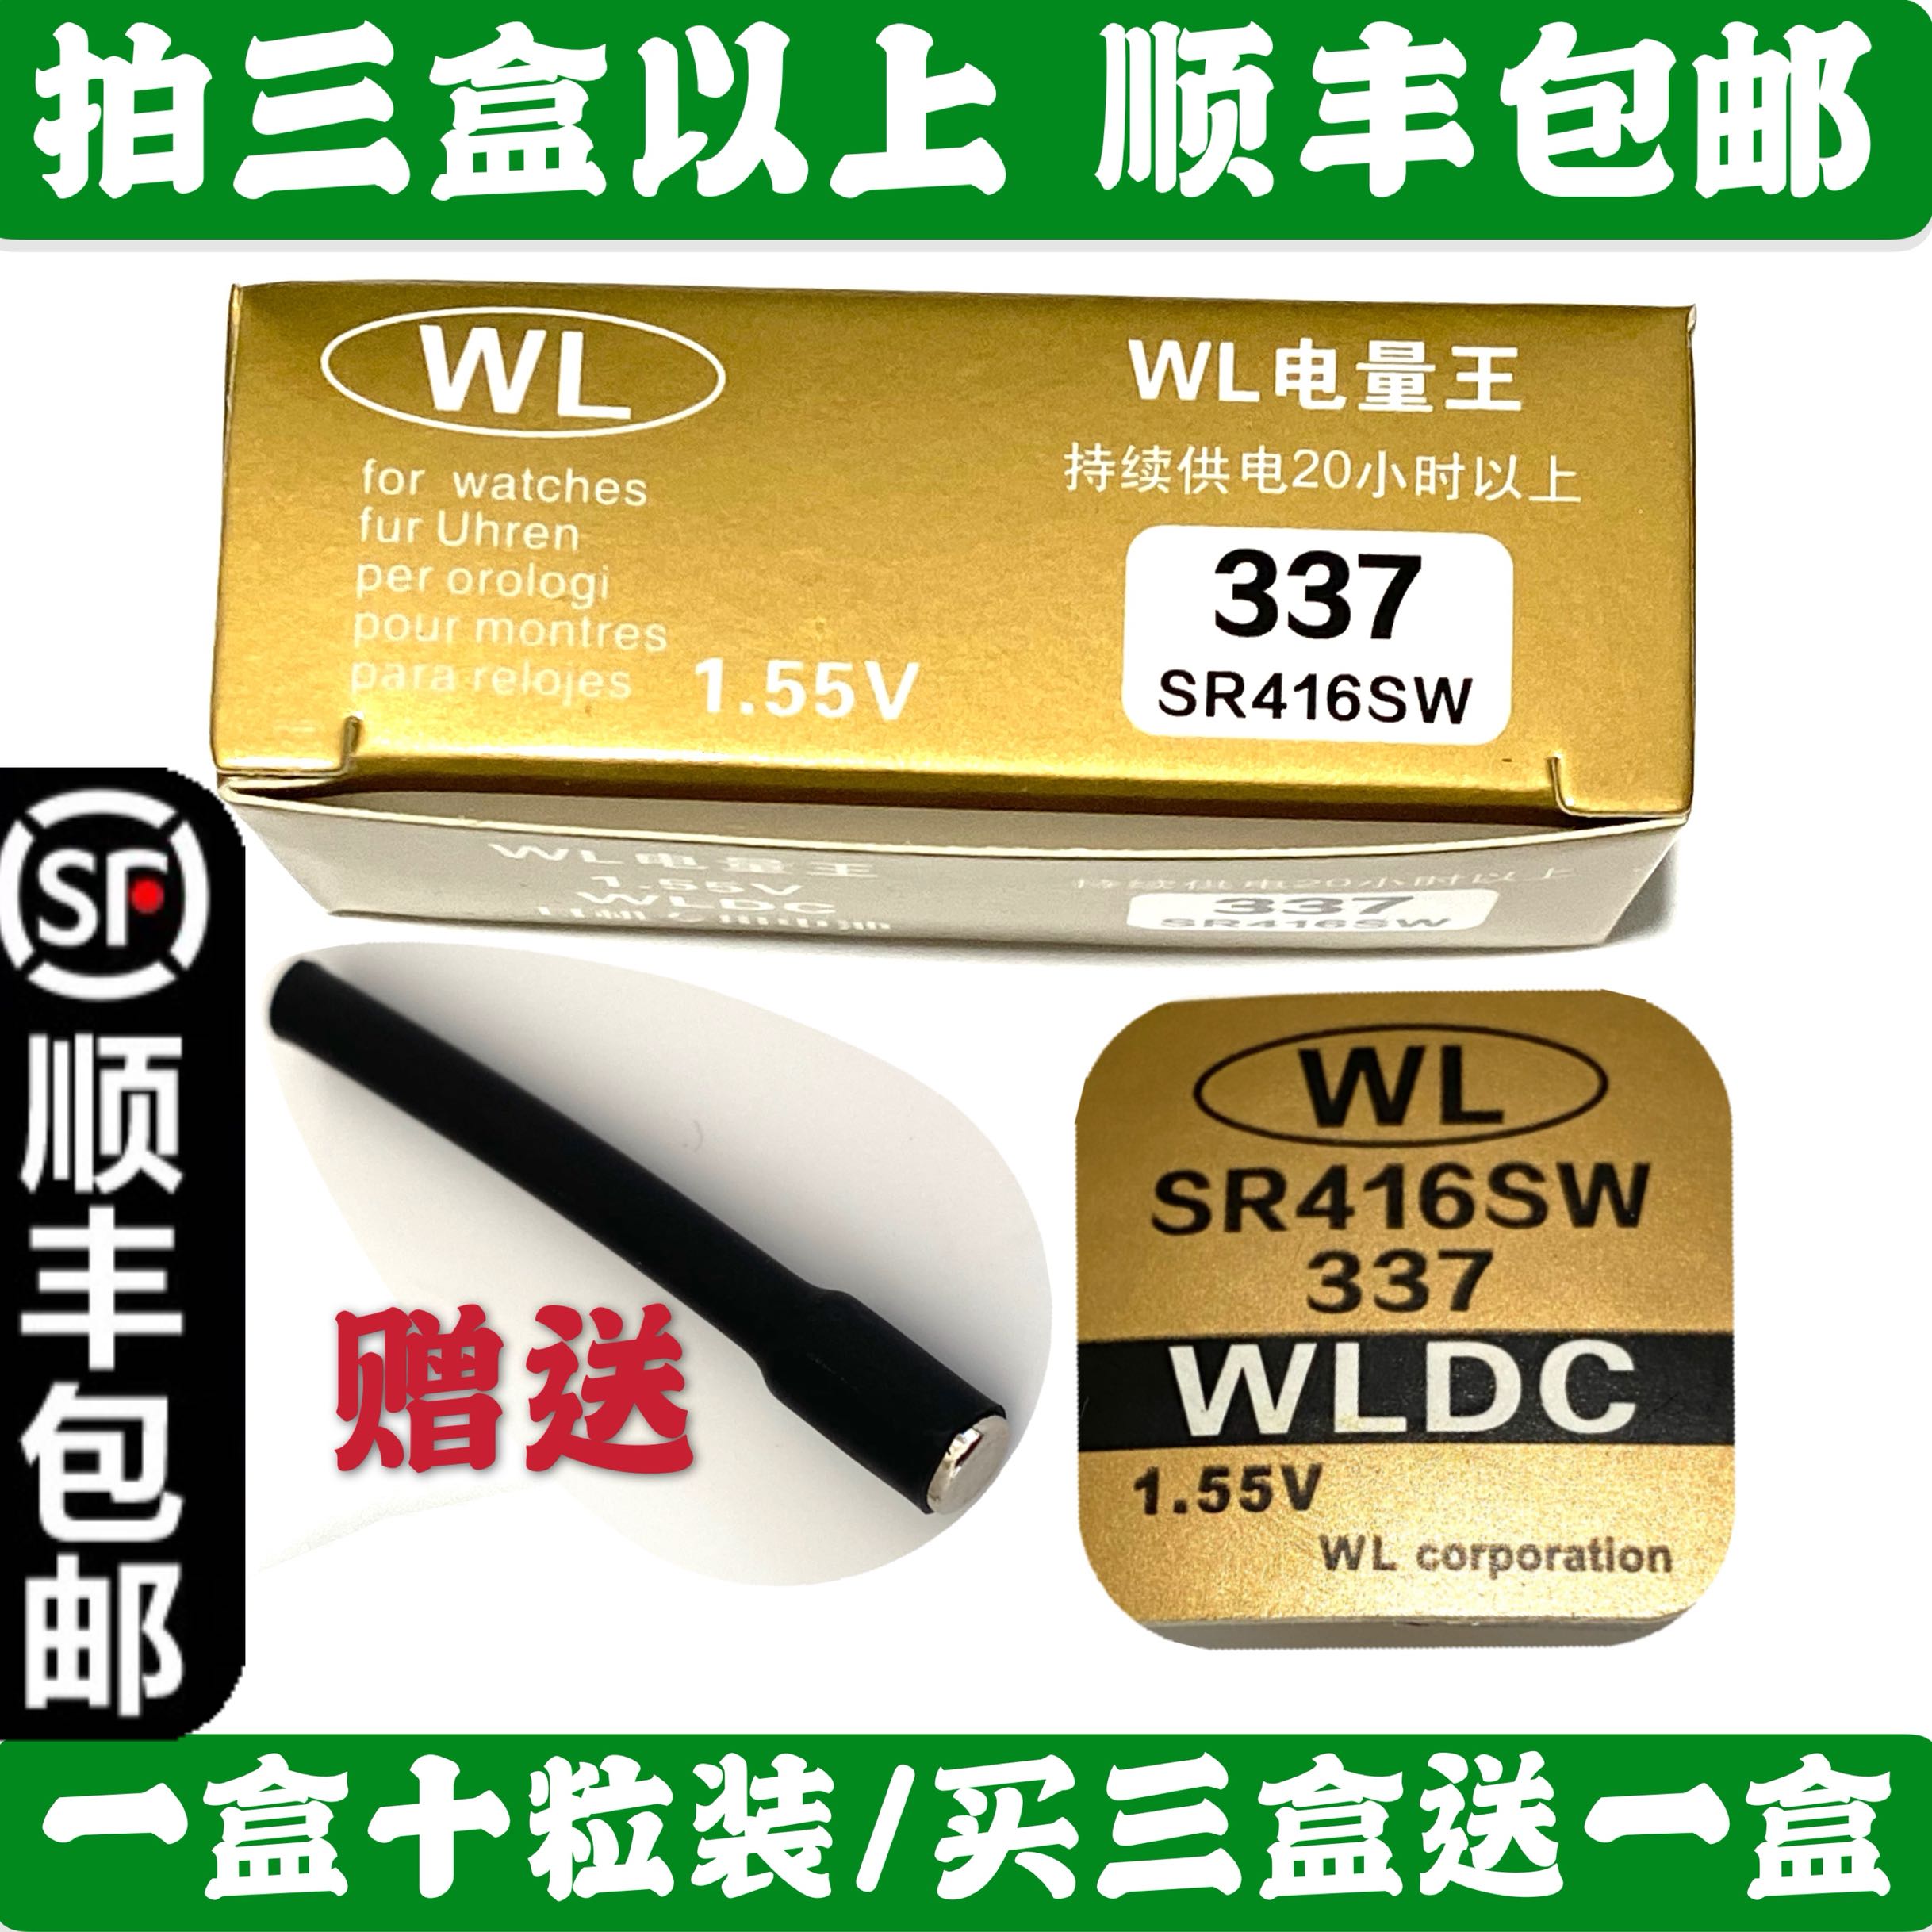 WL337纽扣电池 118土豪金耳机电子 A3电池 SR416SW手表电池1.55v 3C数码配件 纽扣电池 原图主图